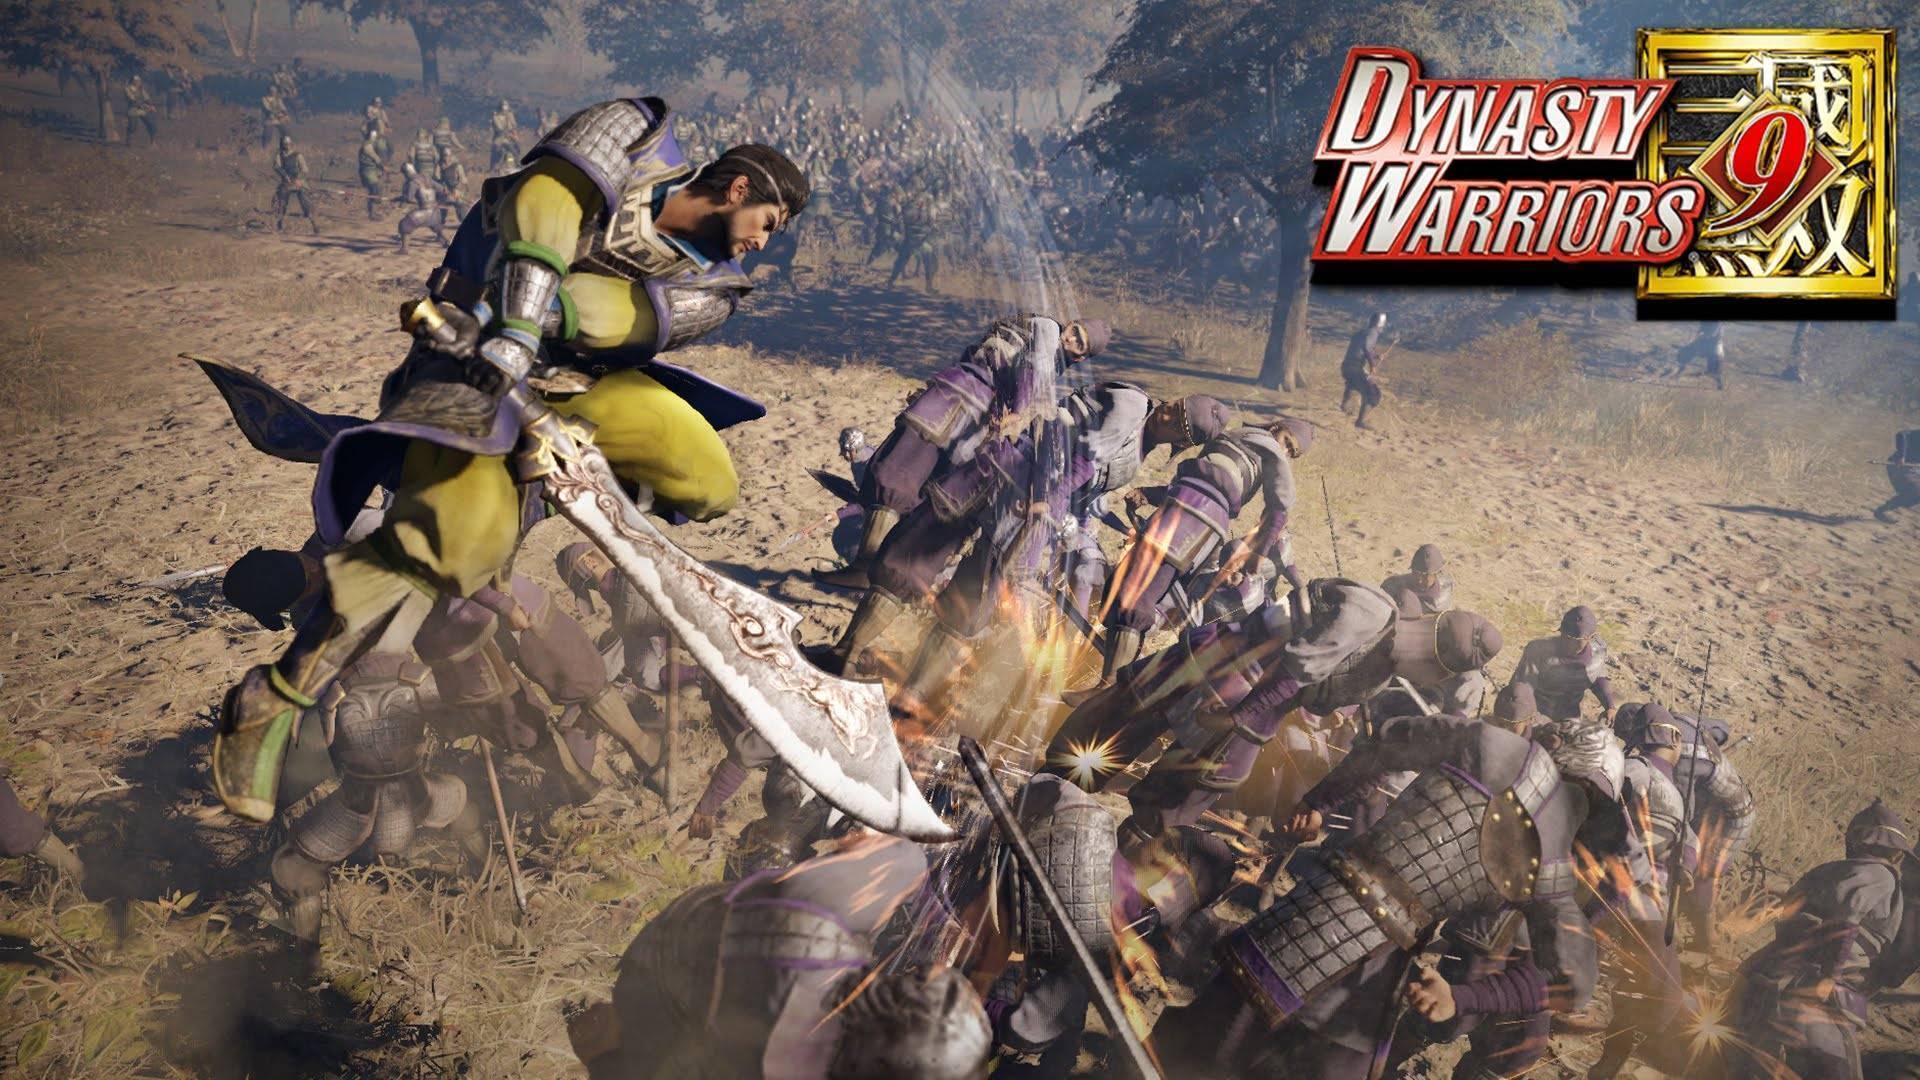 lærebog Der er behov for universitetsområde Dynasty Warriors 9 (PS4) cheap - Price of $12.93